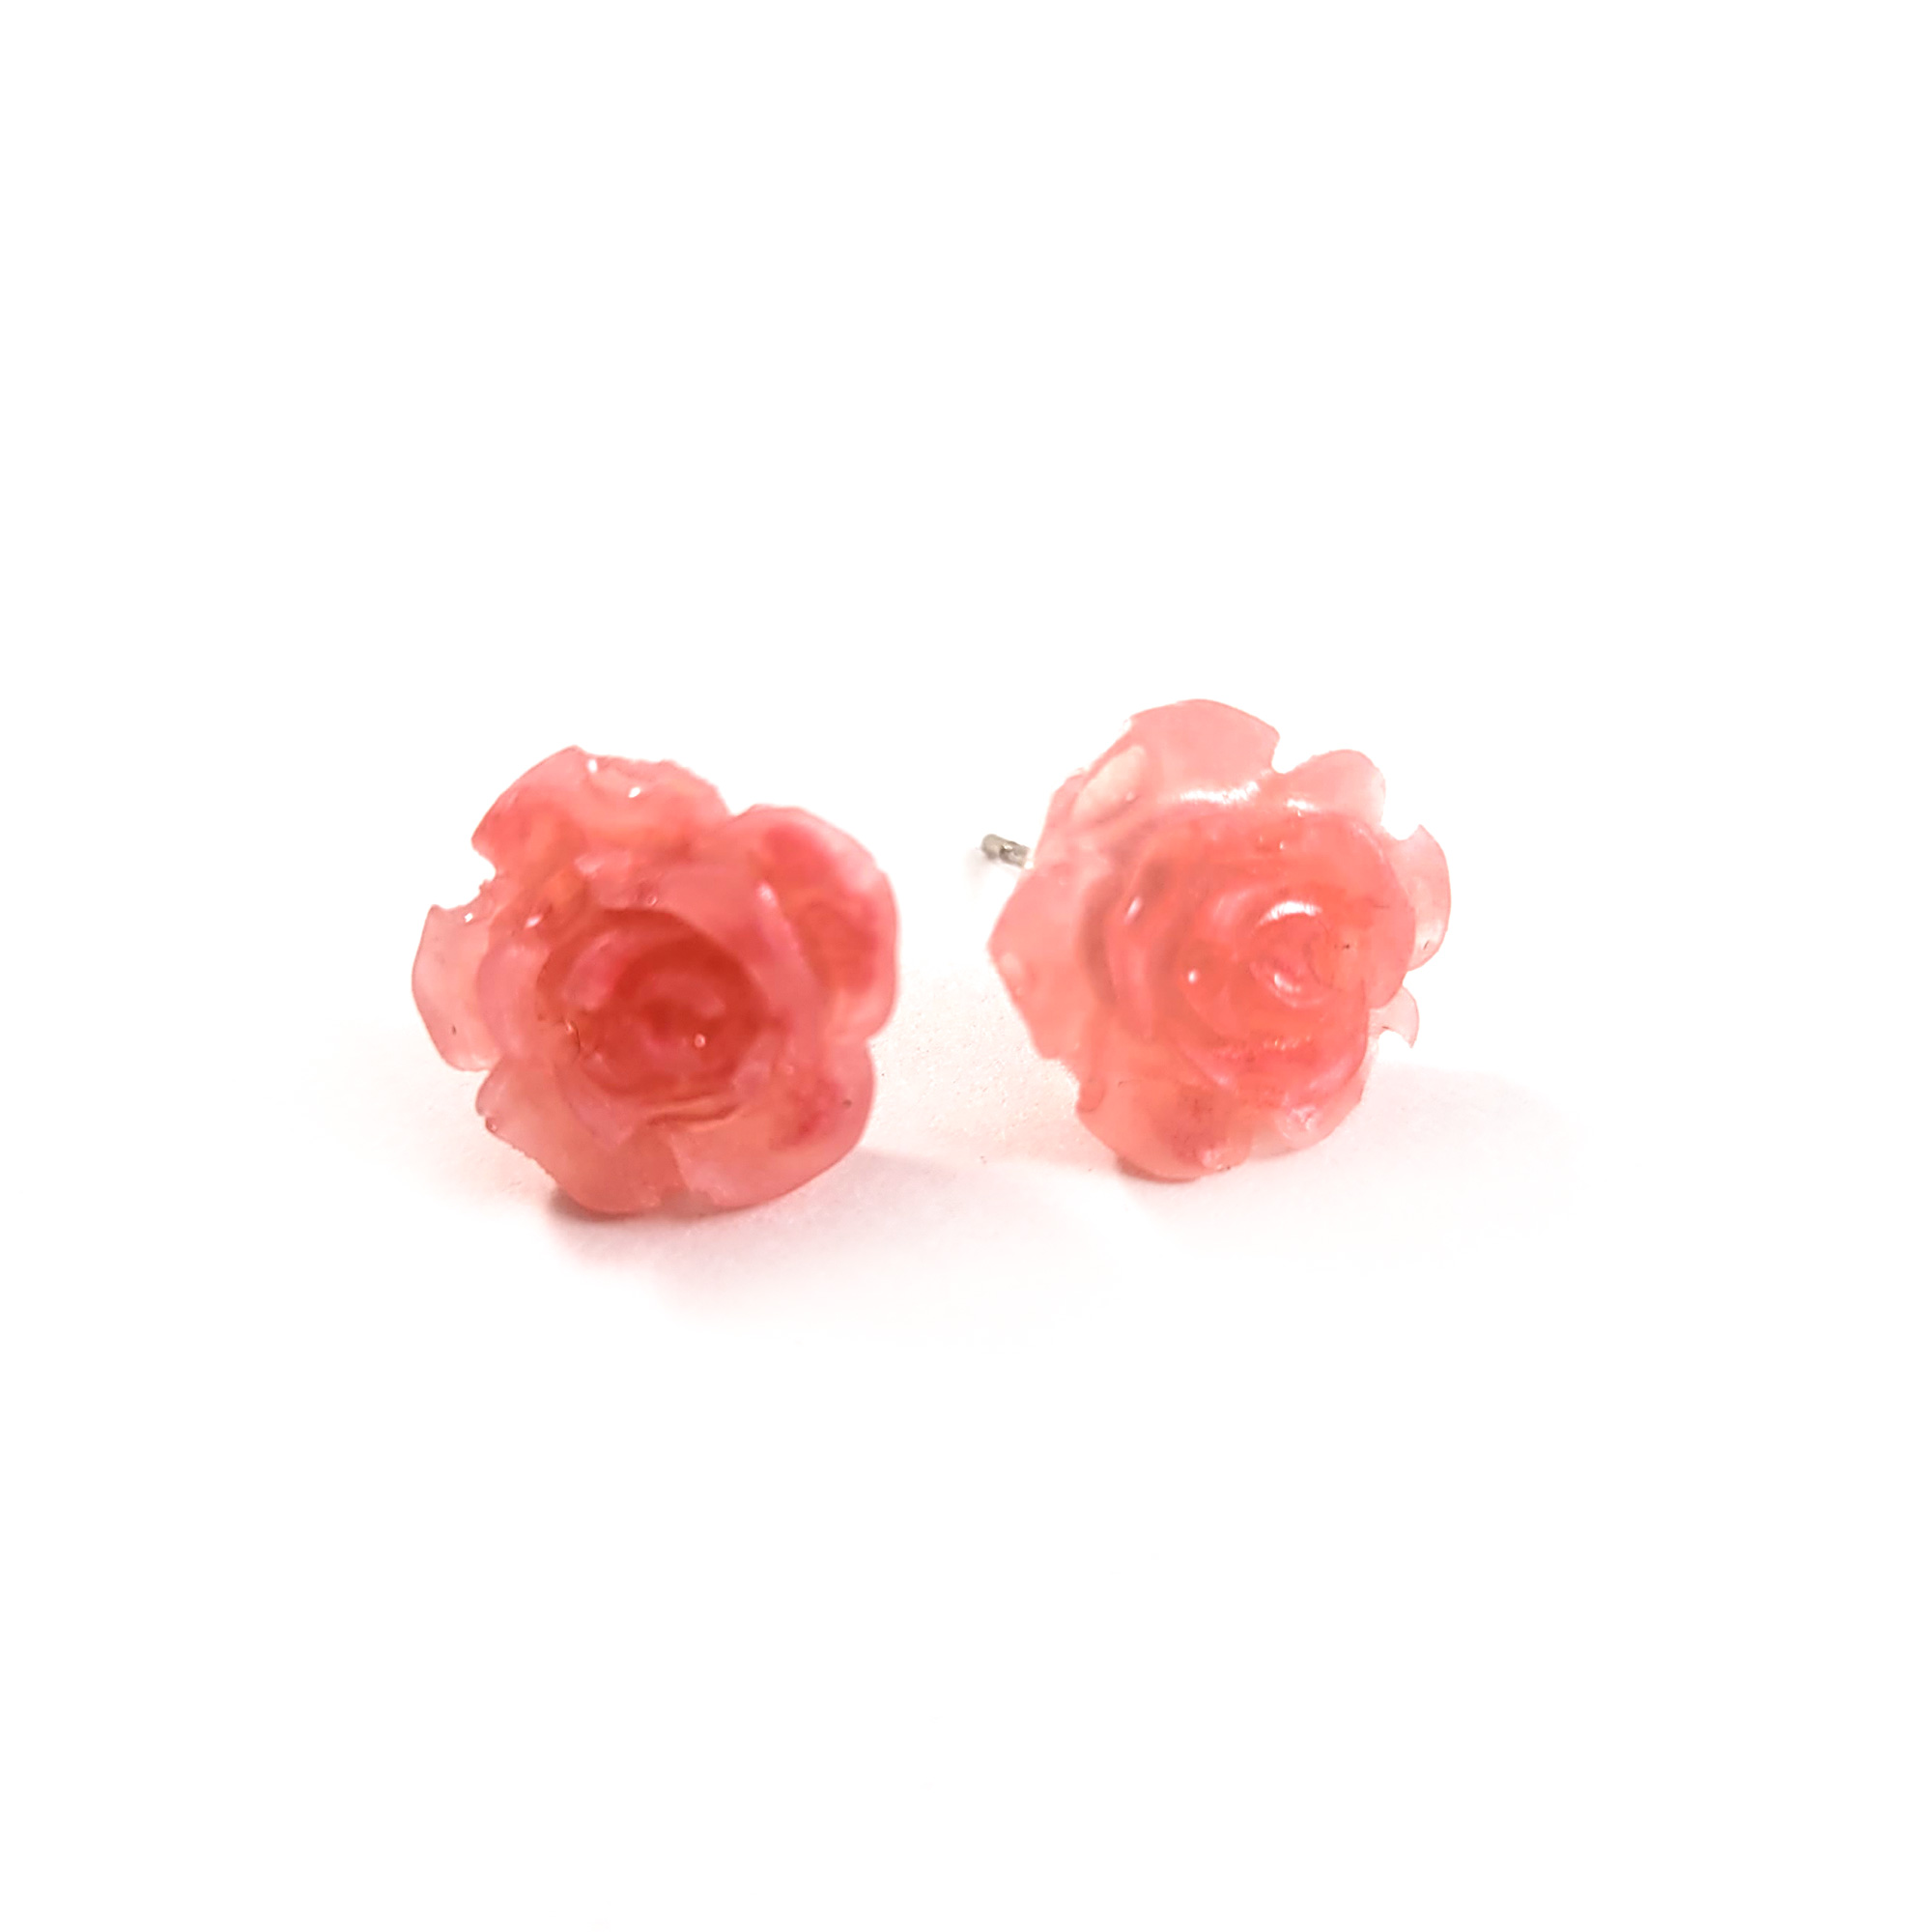 Pink Kawaii Rose Earrings by Wilde Designs